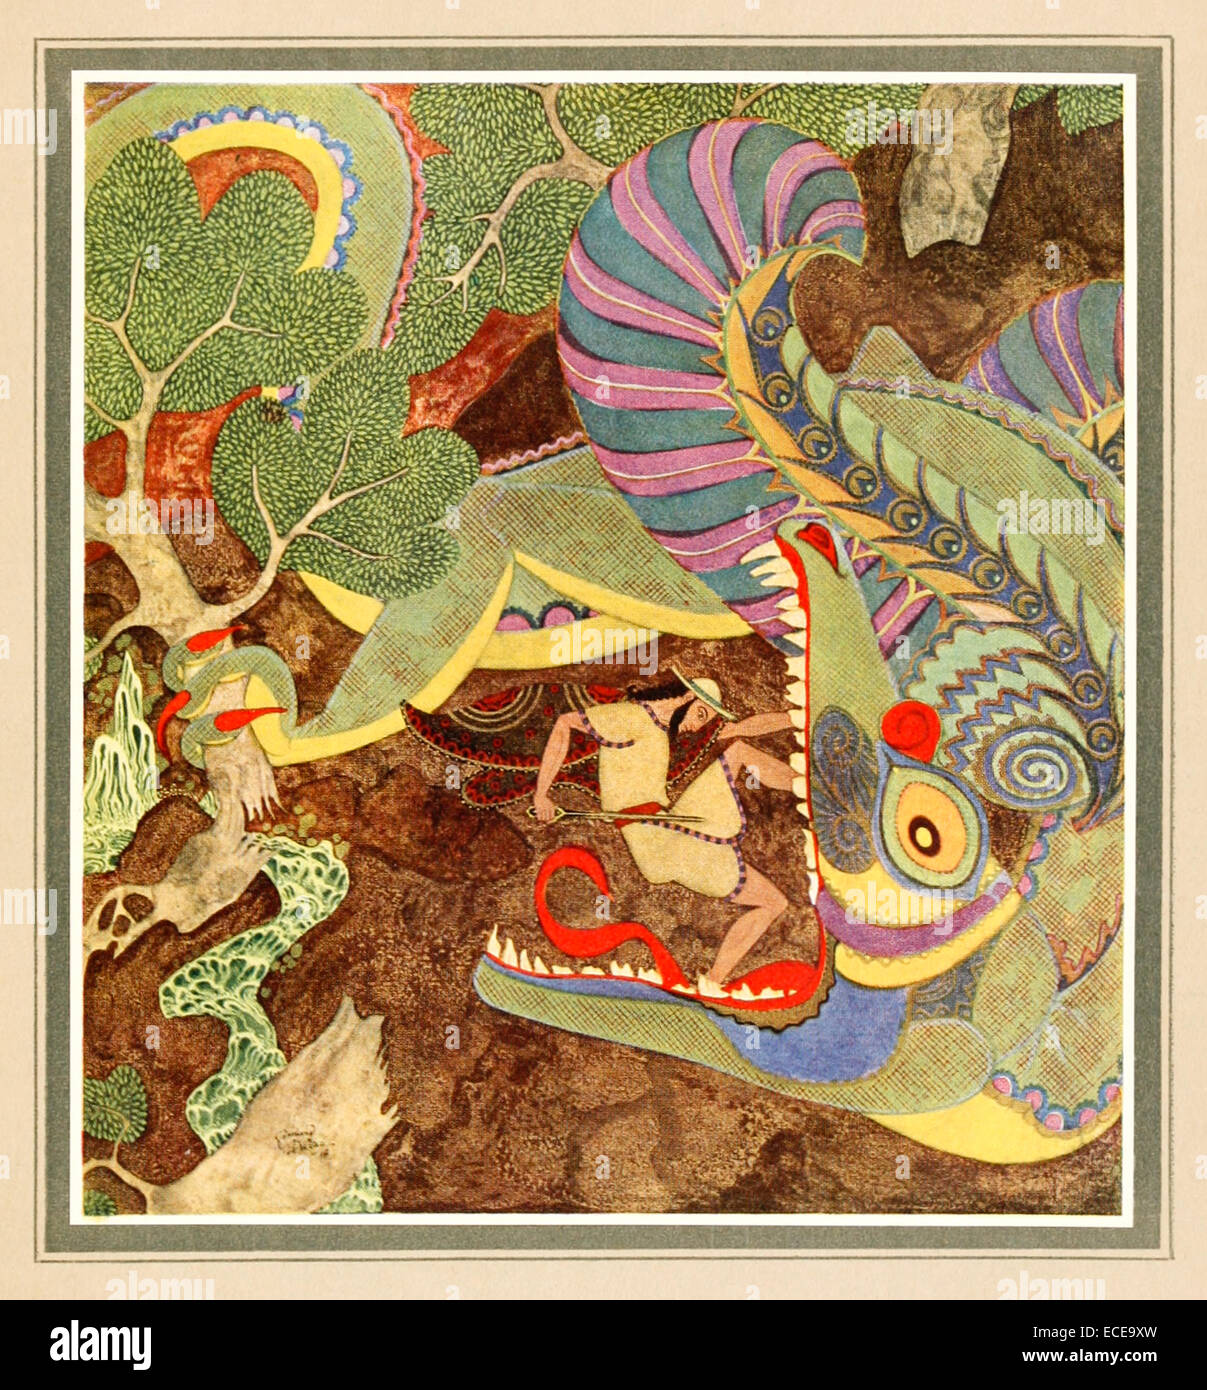 Disegno di Cadmo. la sua spada giunchi presso il mostruoso drago - Edmund Dulac illustrazione da 'Tanglewood Tales". Vedere la descrizione per maggiori informazioni. Foto Stock